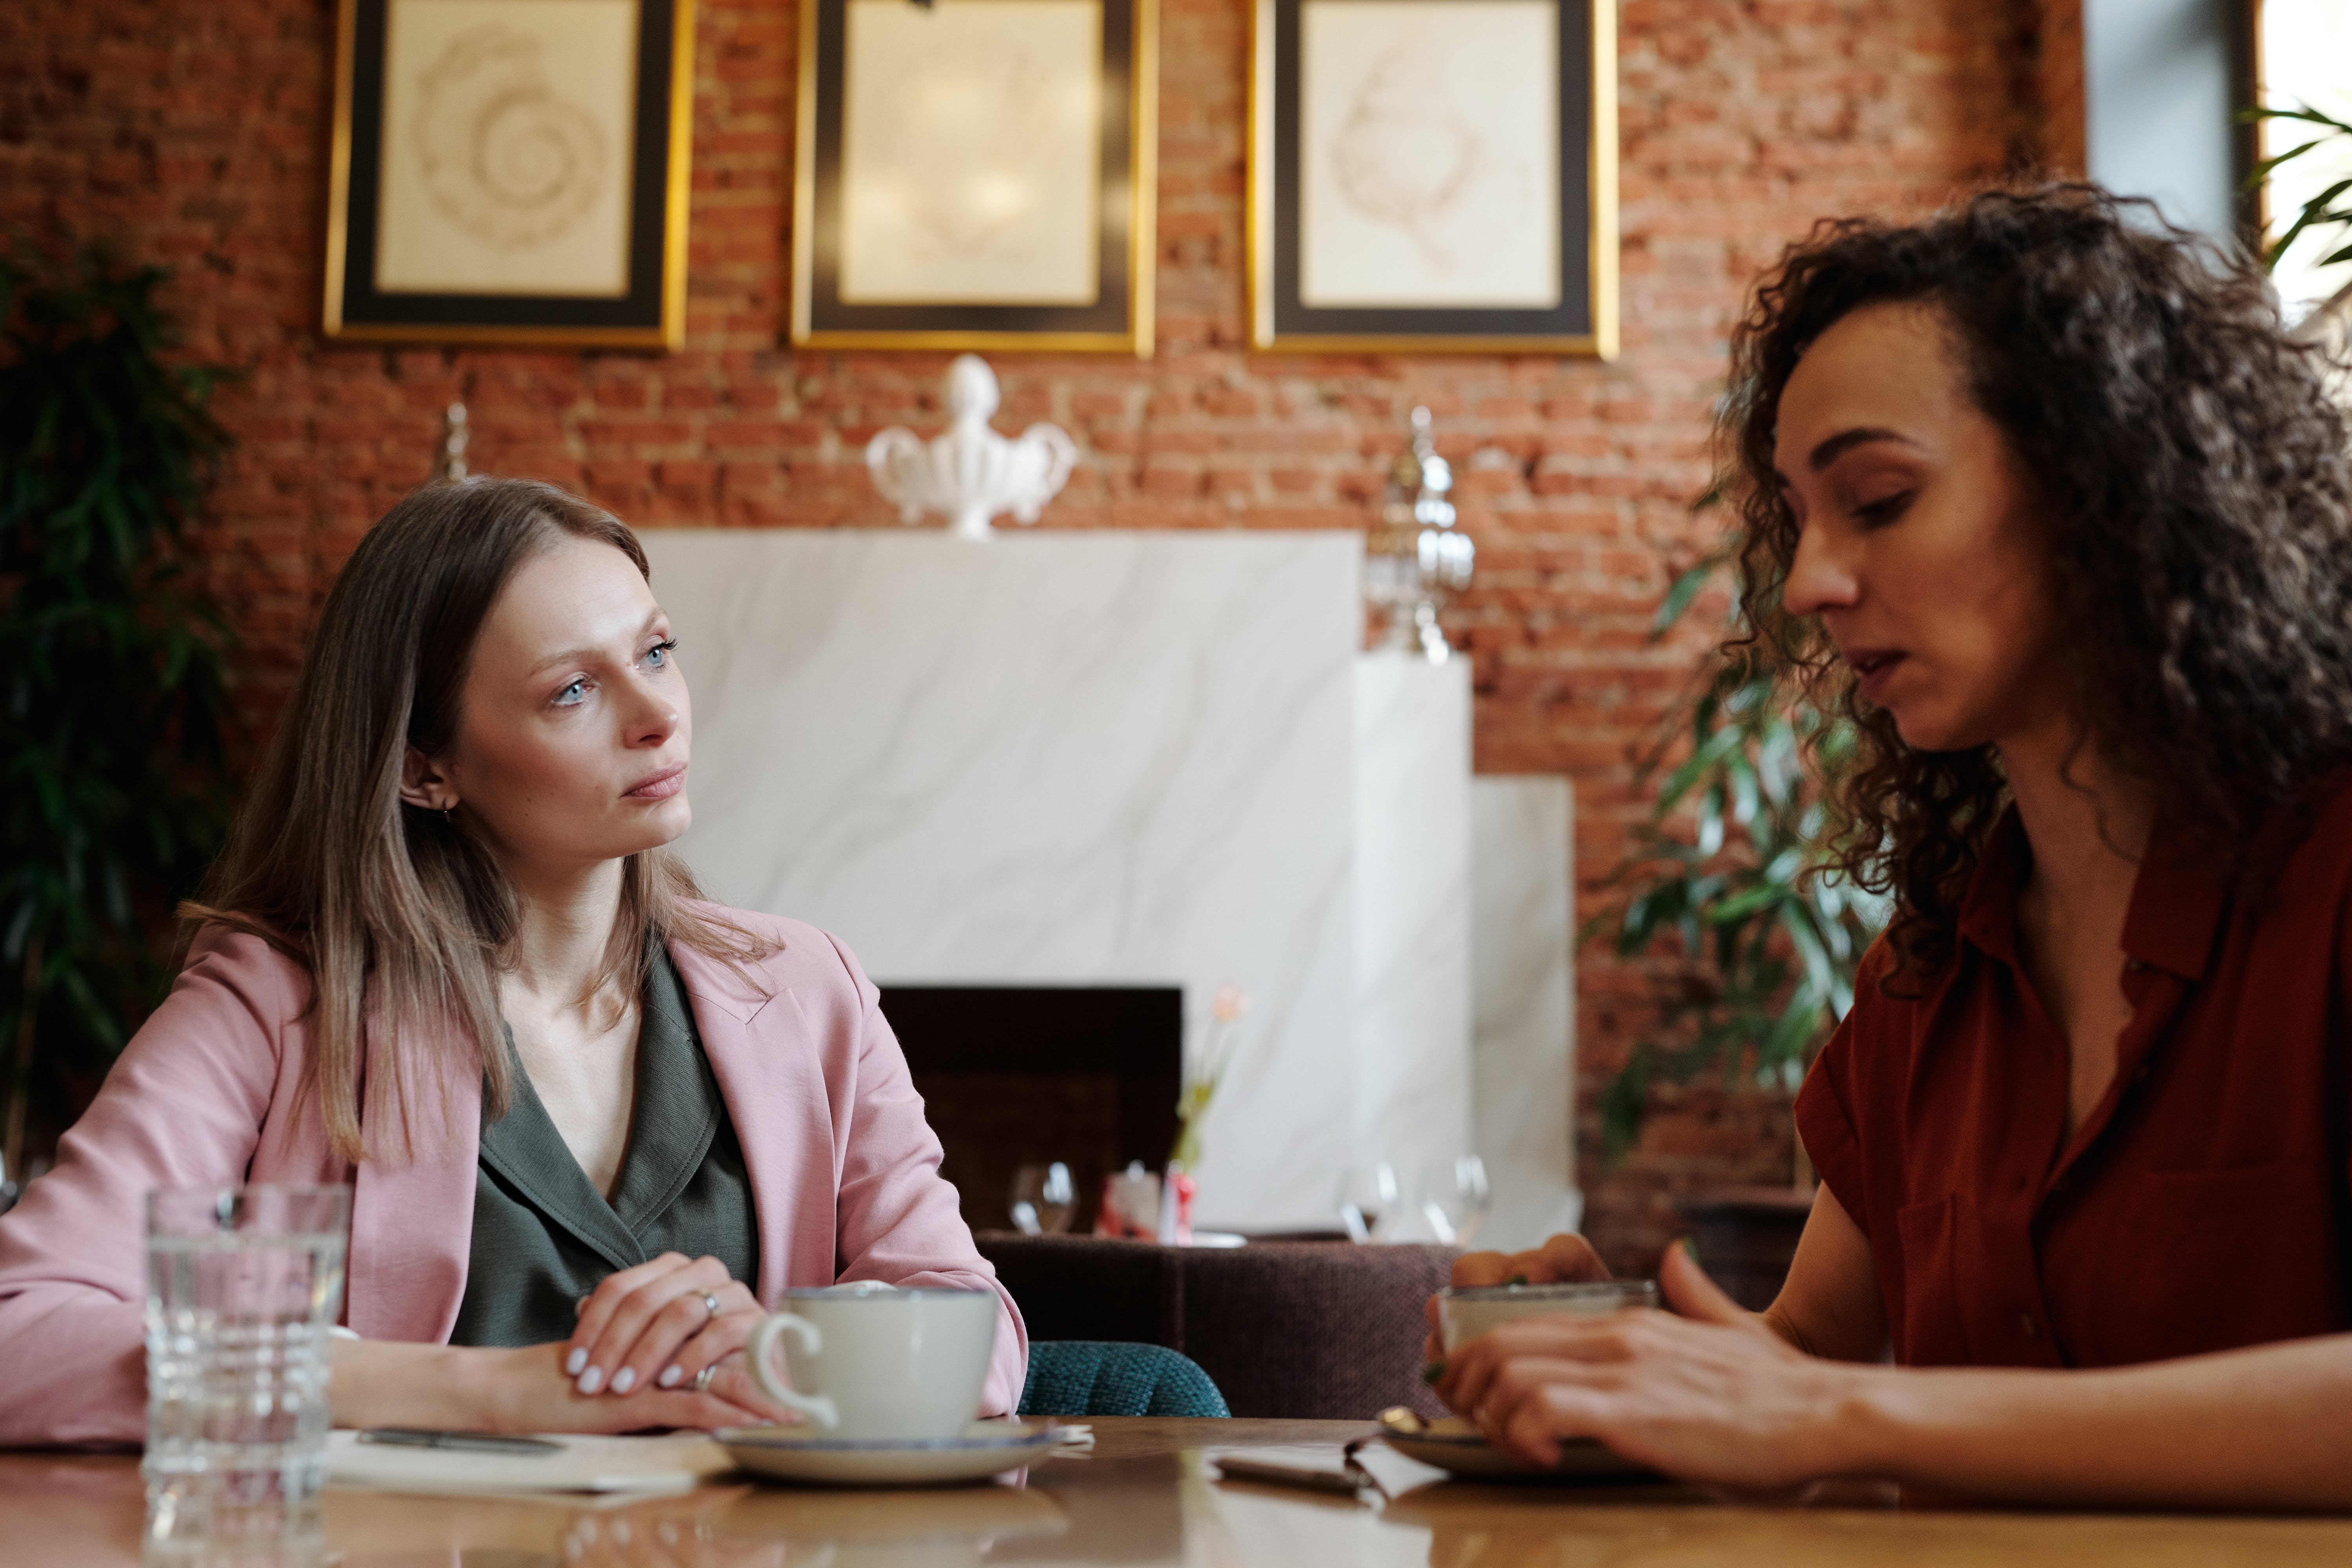 Two women talking in a coffee shop | Source: Pexels